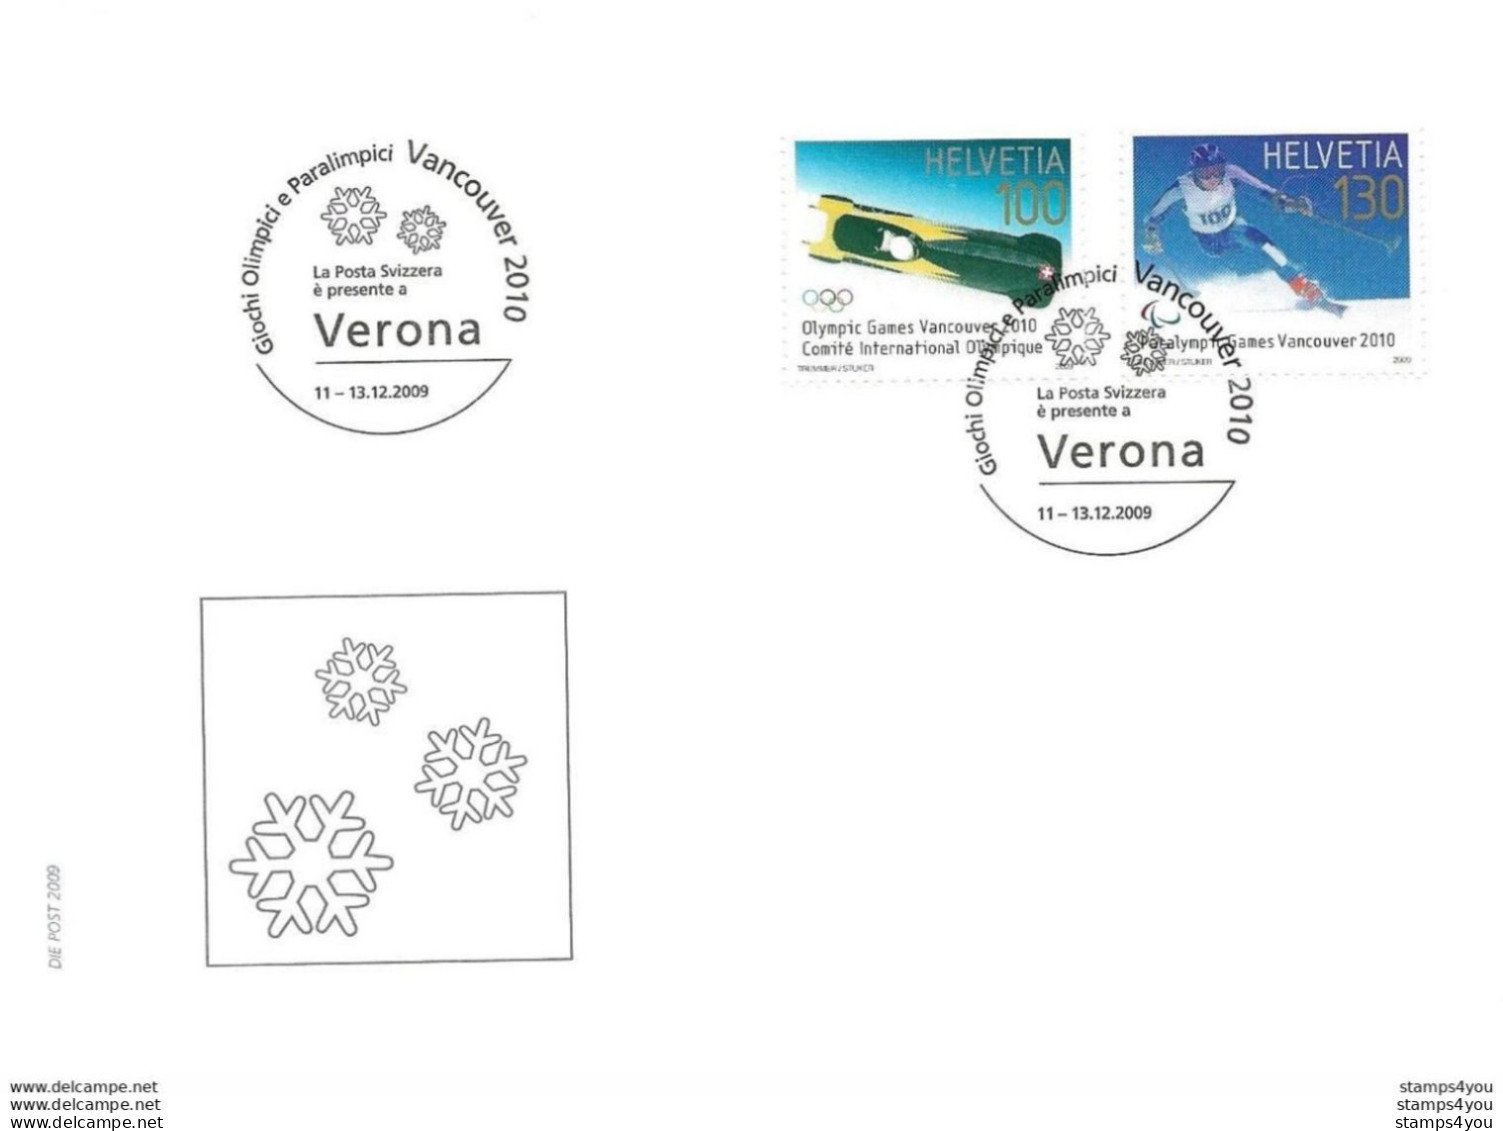 232 - 25 - Enveloppe Avec Timbres Suisse Et CIO "JO Vancouver" Oblit Spéciale Verona 2009 - Hiver 2010: Vancouver